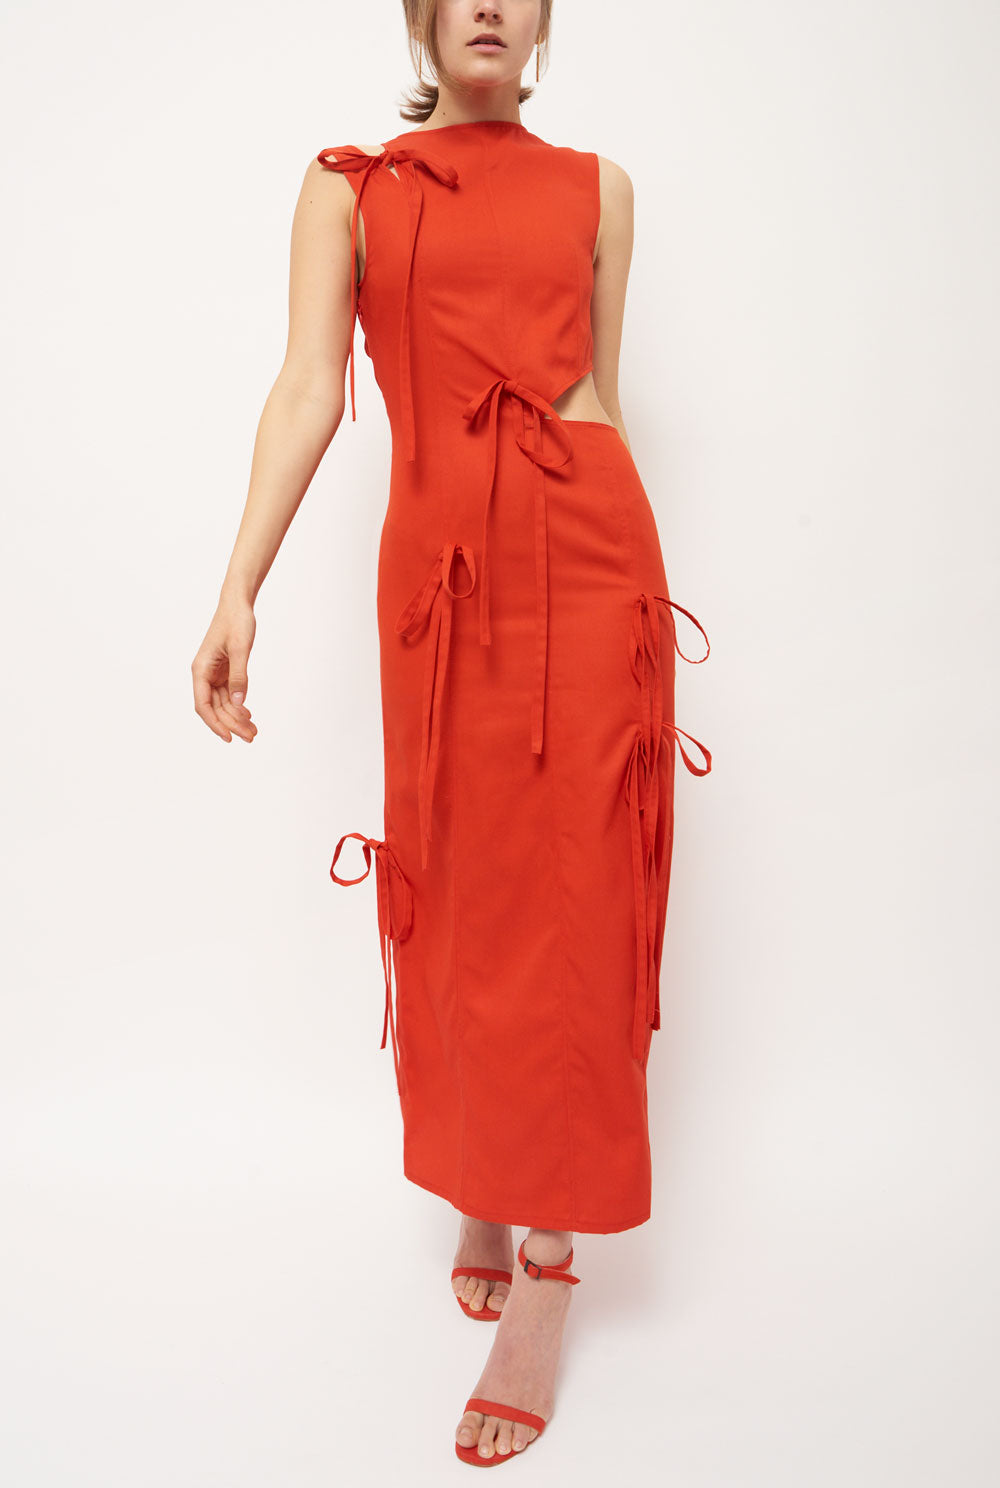 Red asymmetrical long dress dress Habey Club 